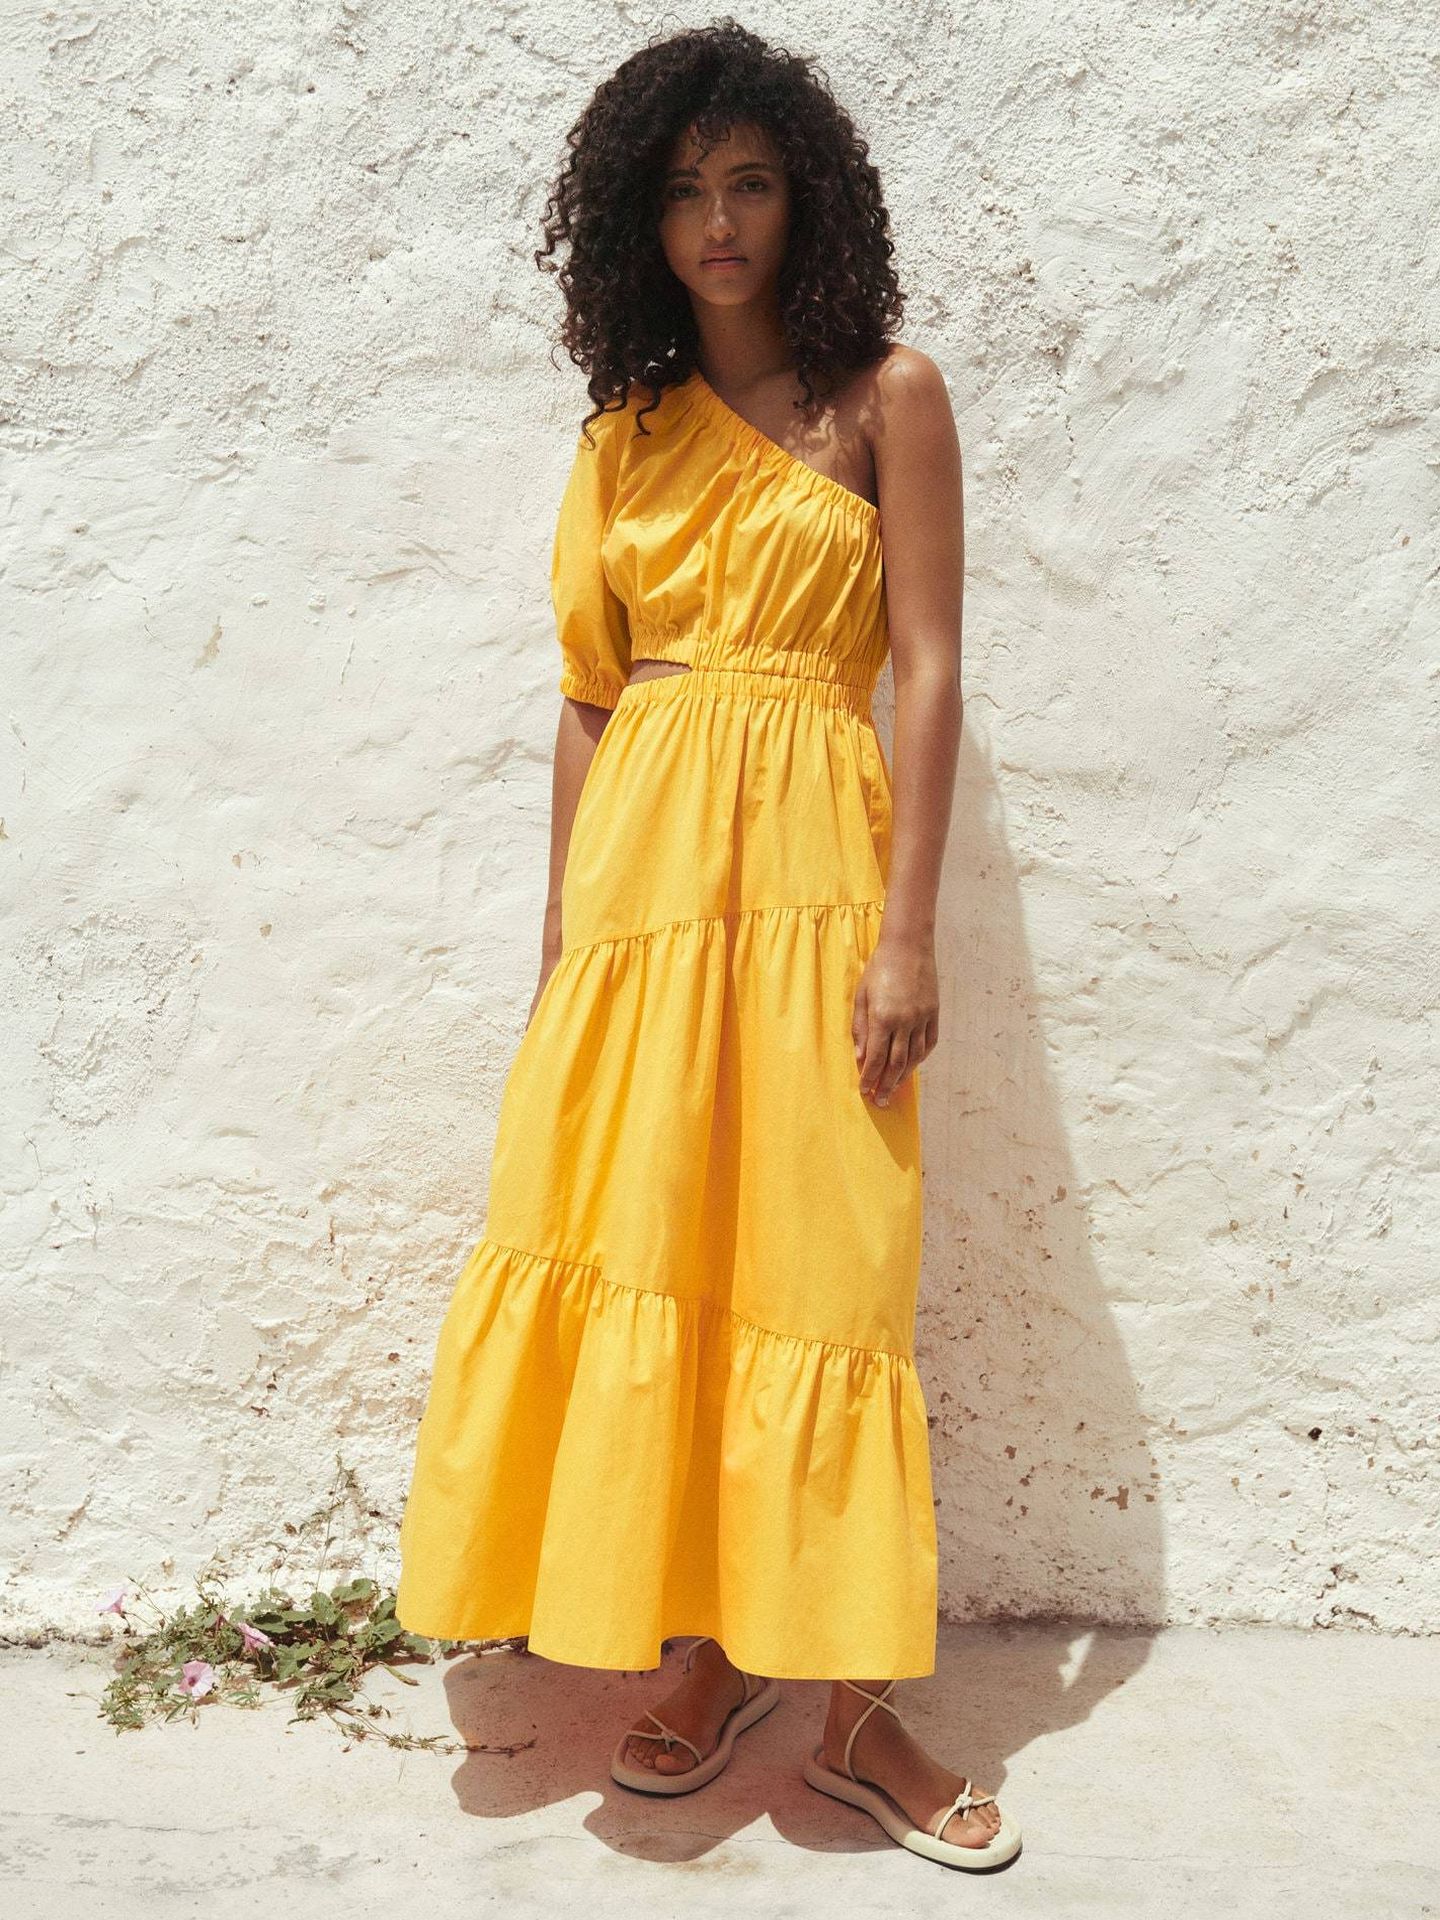 Triunfar está asegurado con Mango y este vestido amarillo como sol